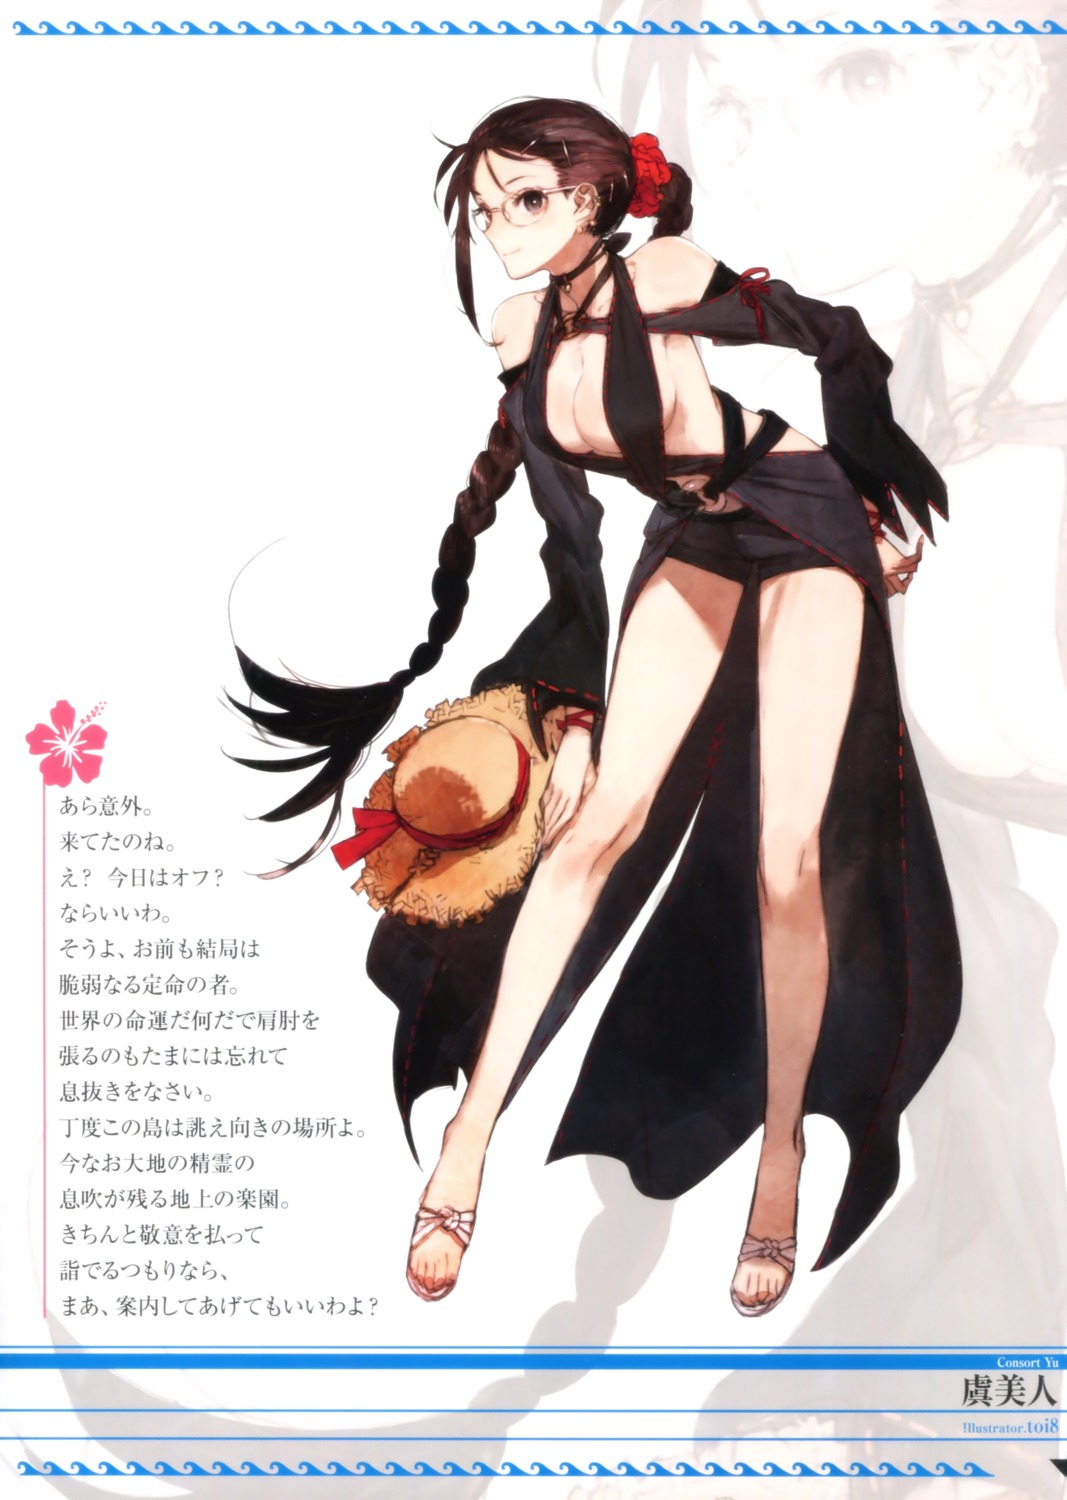 Toi8 Fate Grand Order Consort Yu Fate Grand Order Cleavage Dress Megane Yande Re